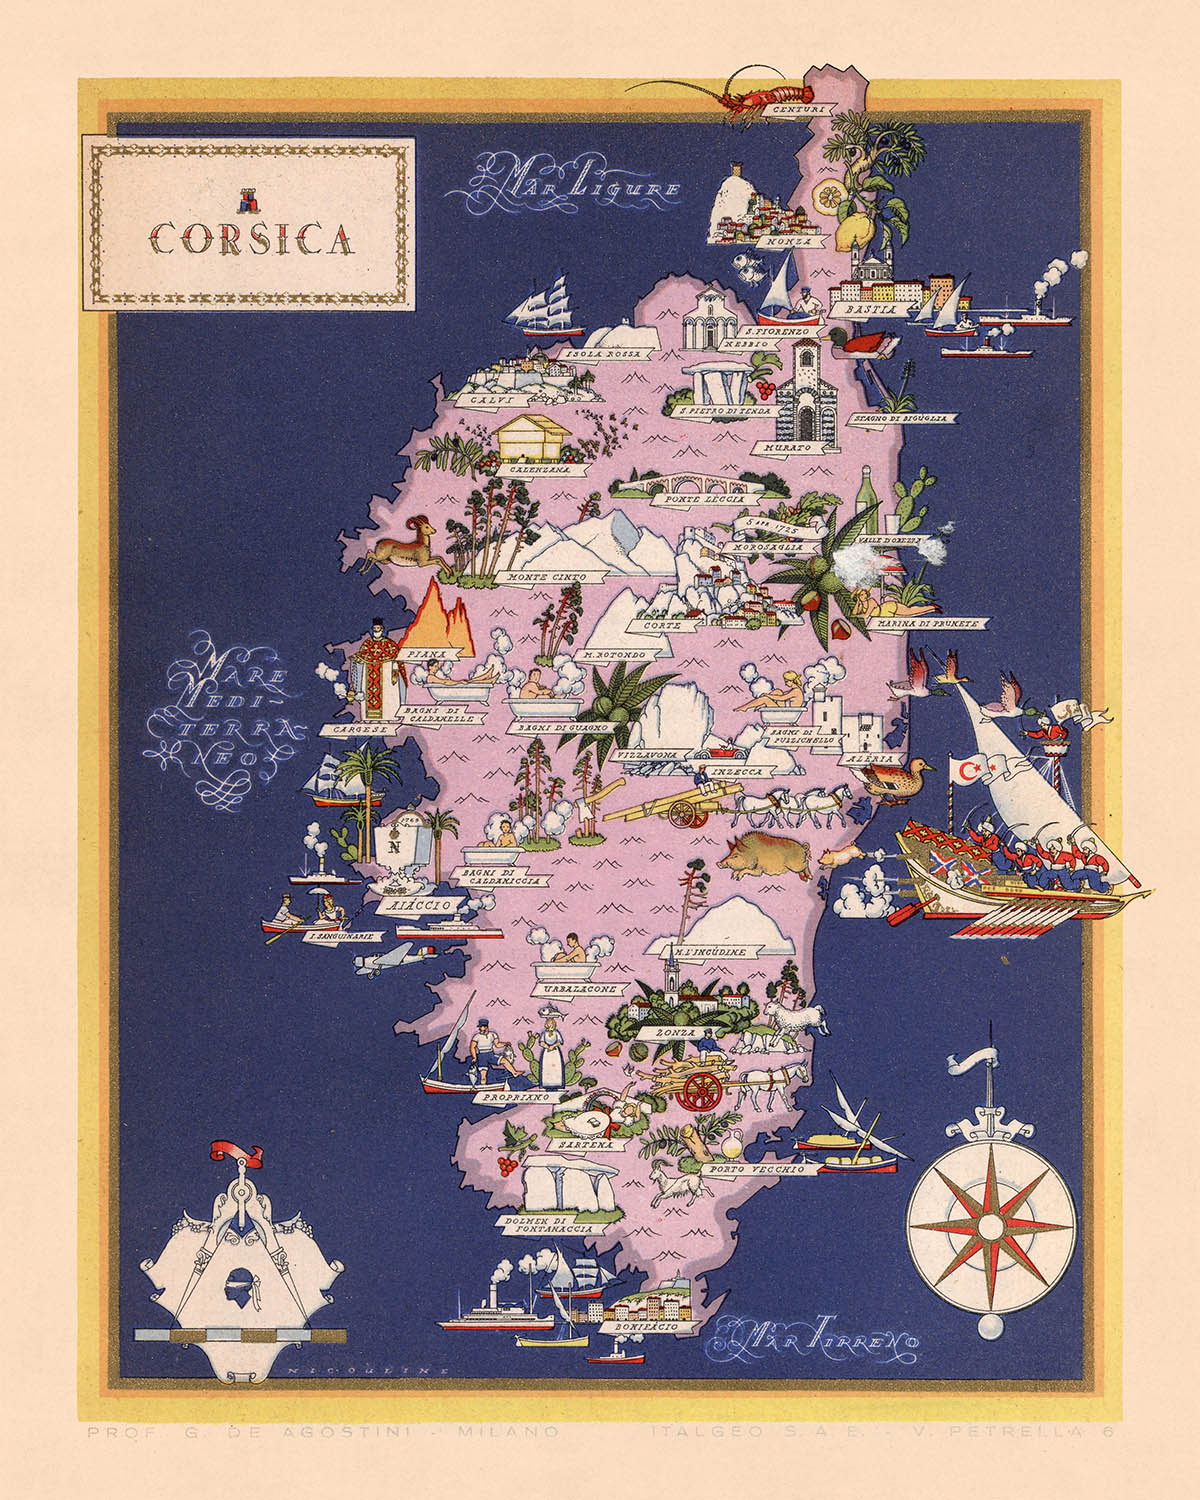 Old Pictorial Map of Corsica, 1938: Bastia, Ajaccio, Calvi, Corte, Porto-Vecchio